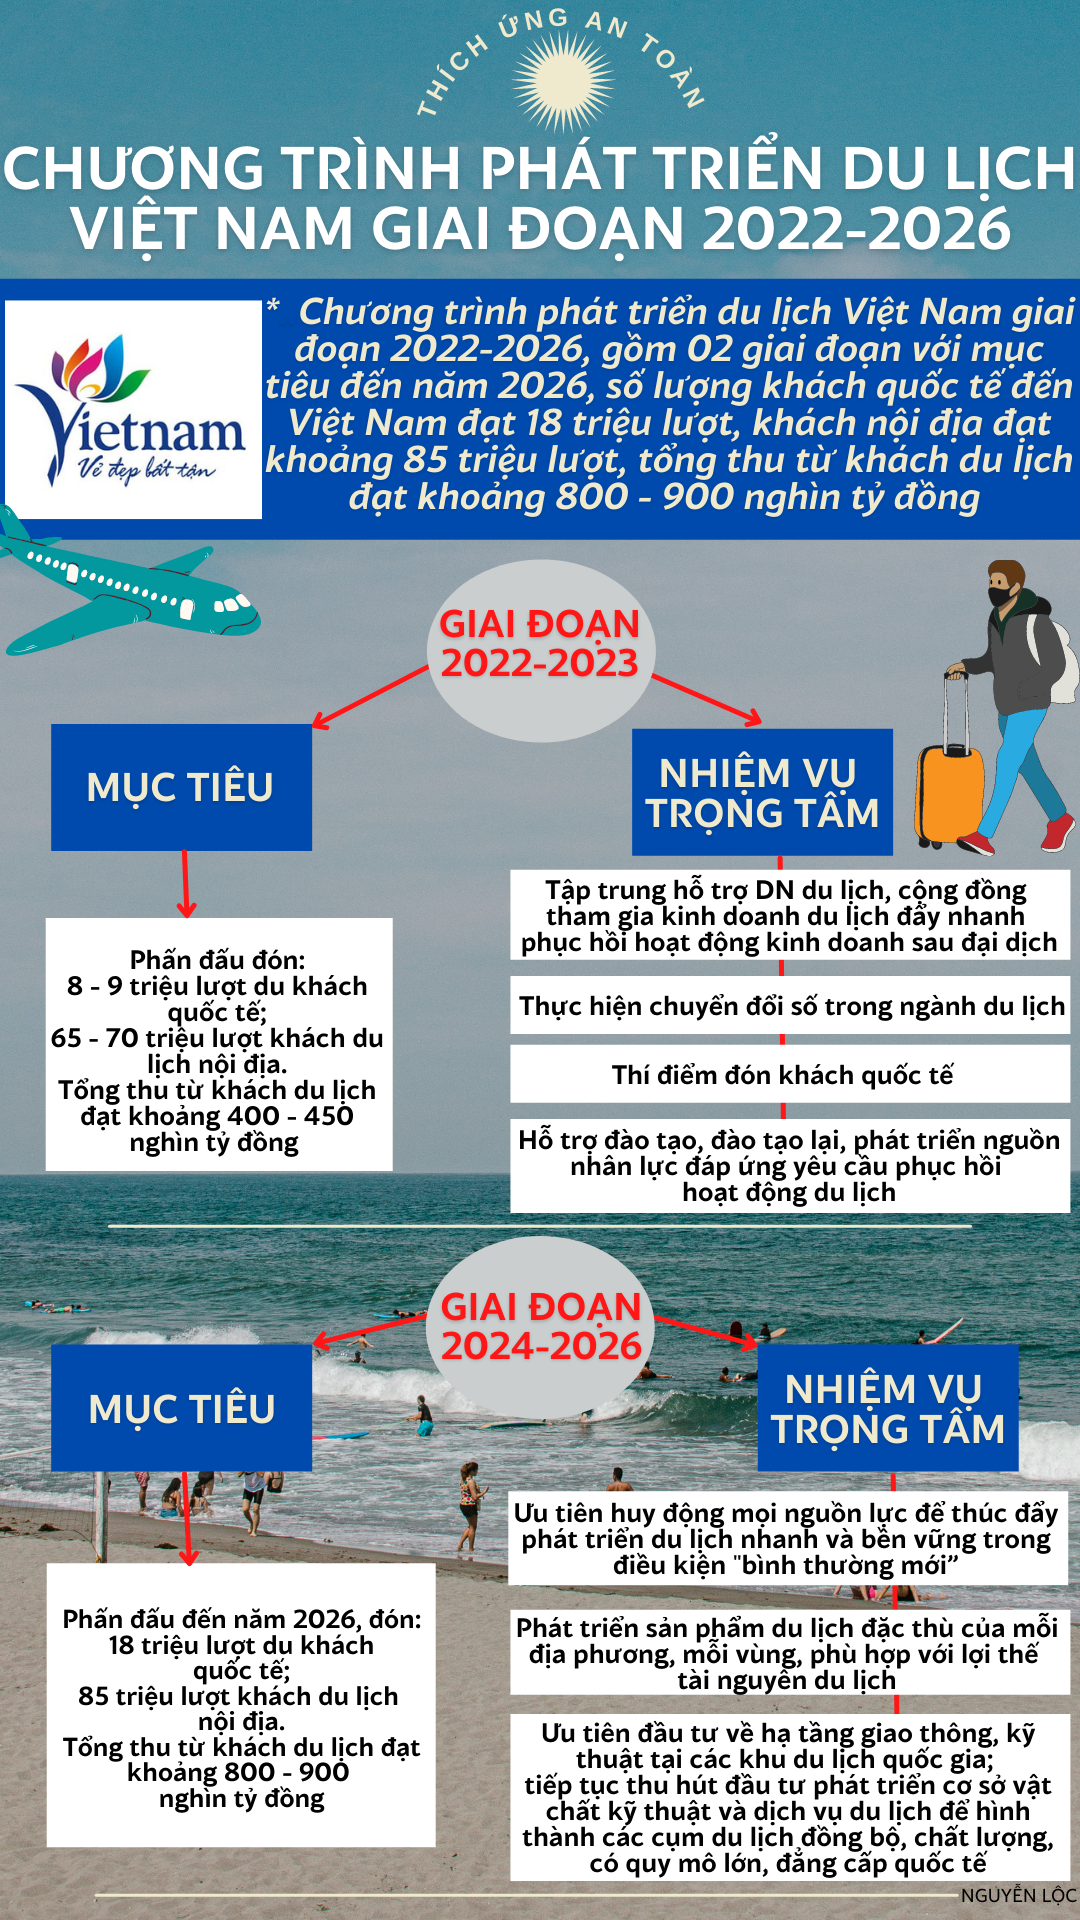 Chương trình phát triển du lịch Việt Nam giai đoạn 2022-2026